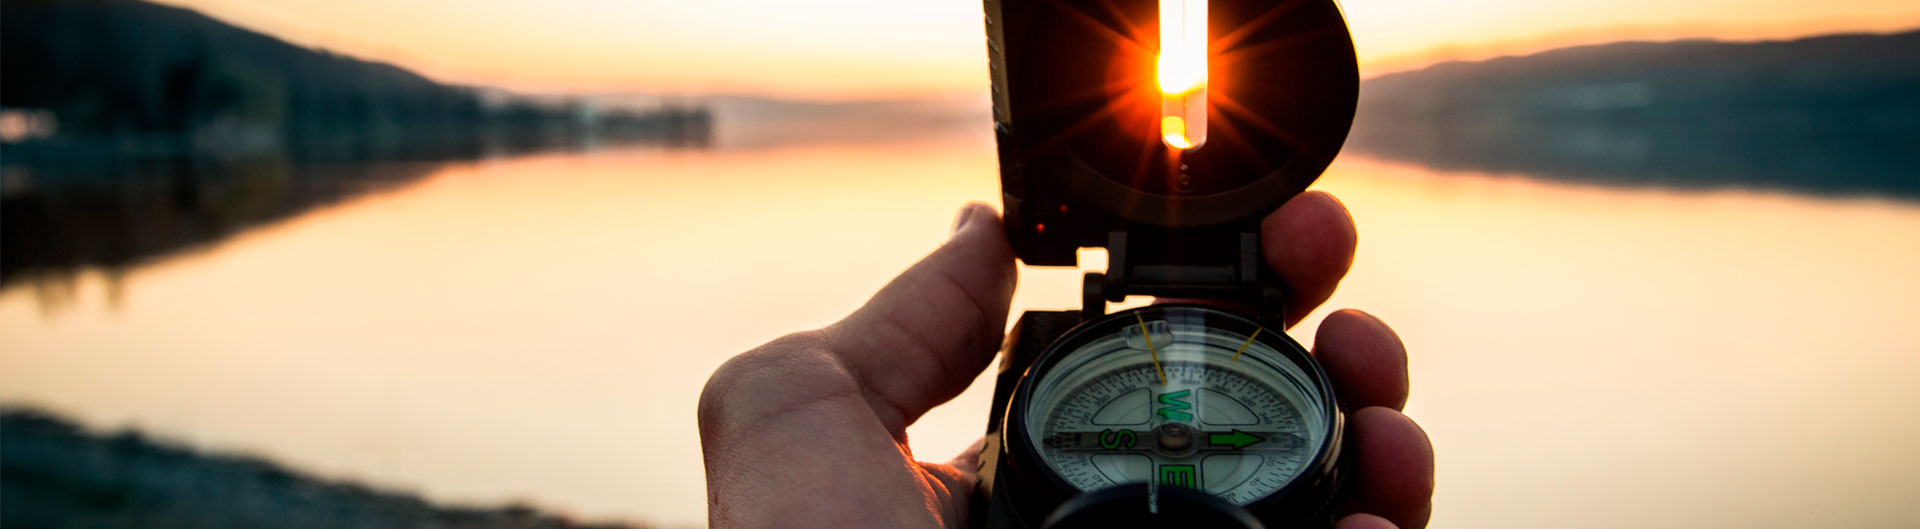 Käsi pitelee kompassia joka osoittaa nousevan auringon valaisemaa järvimaisemaa kohti.